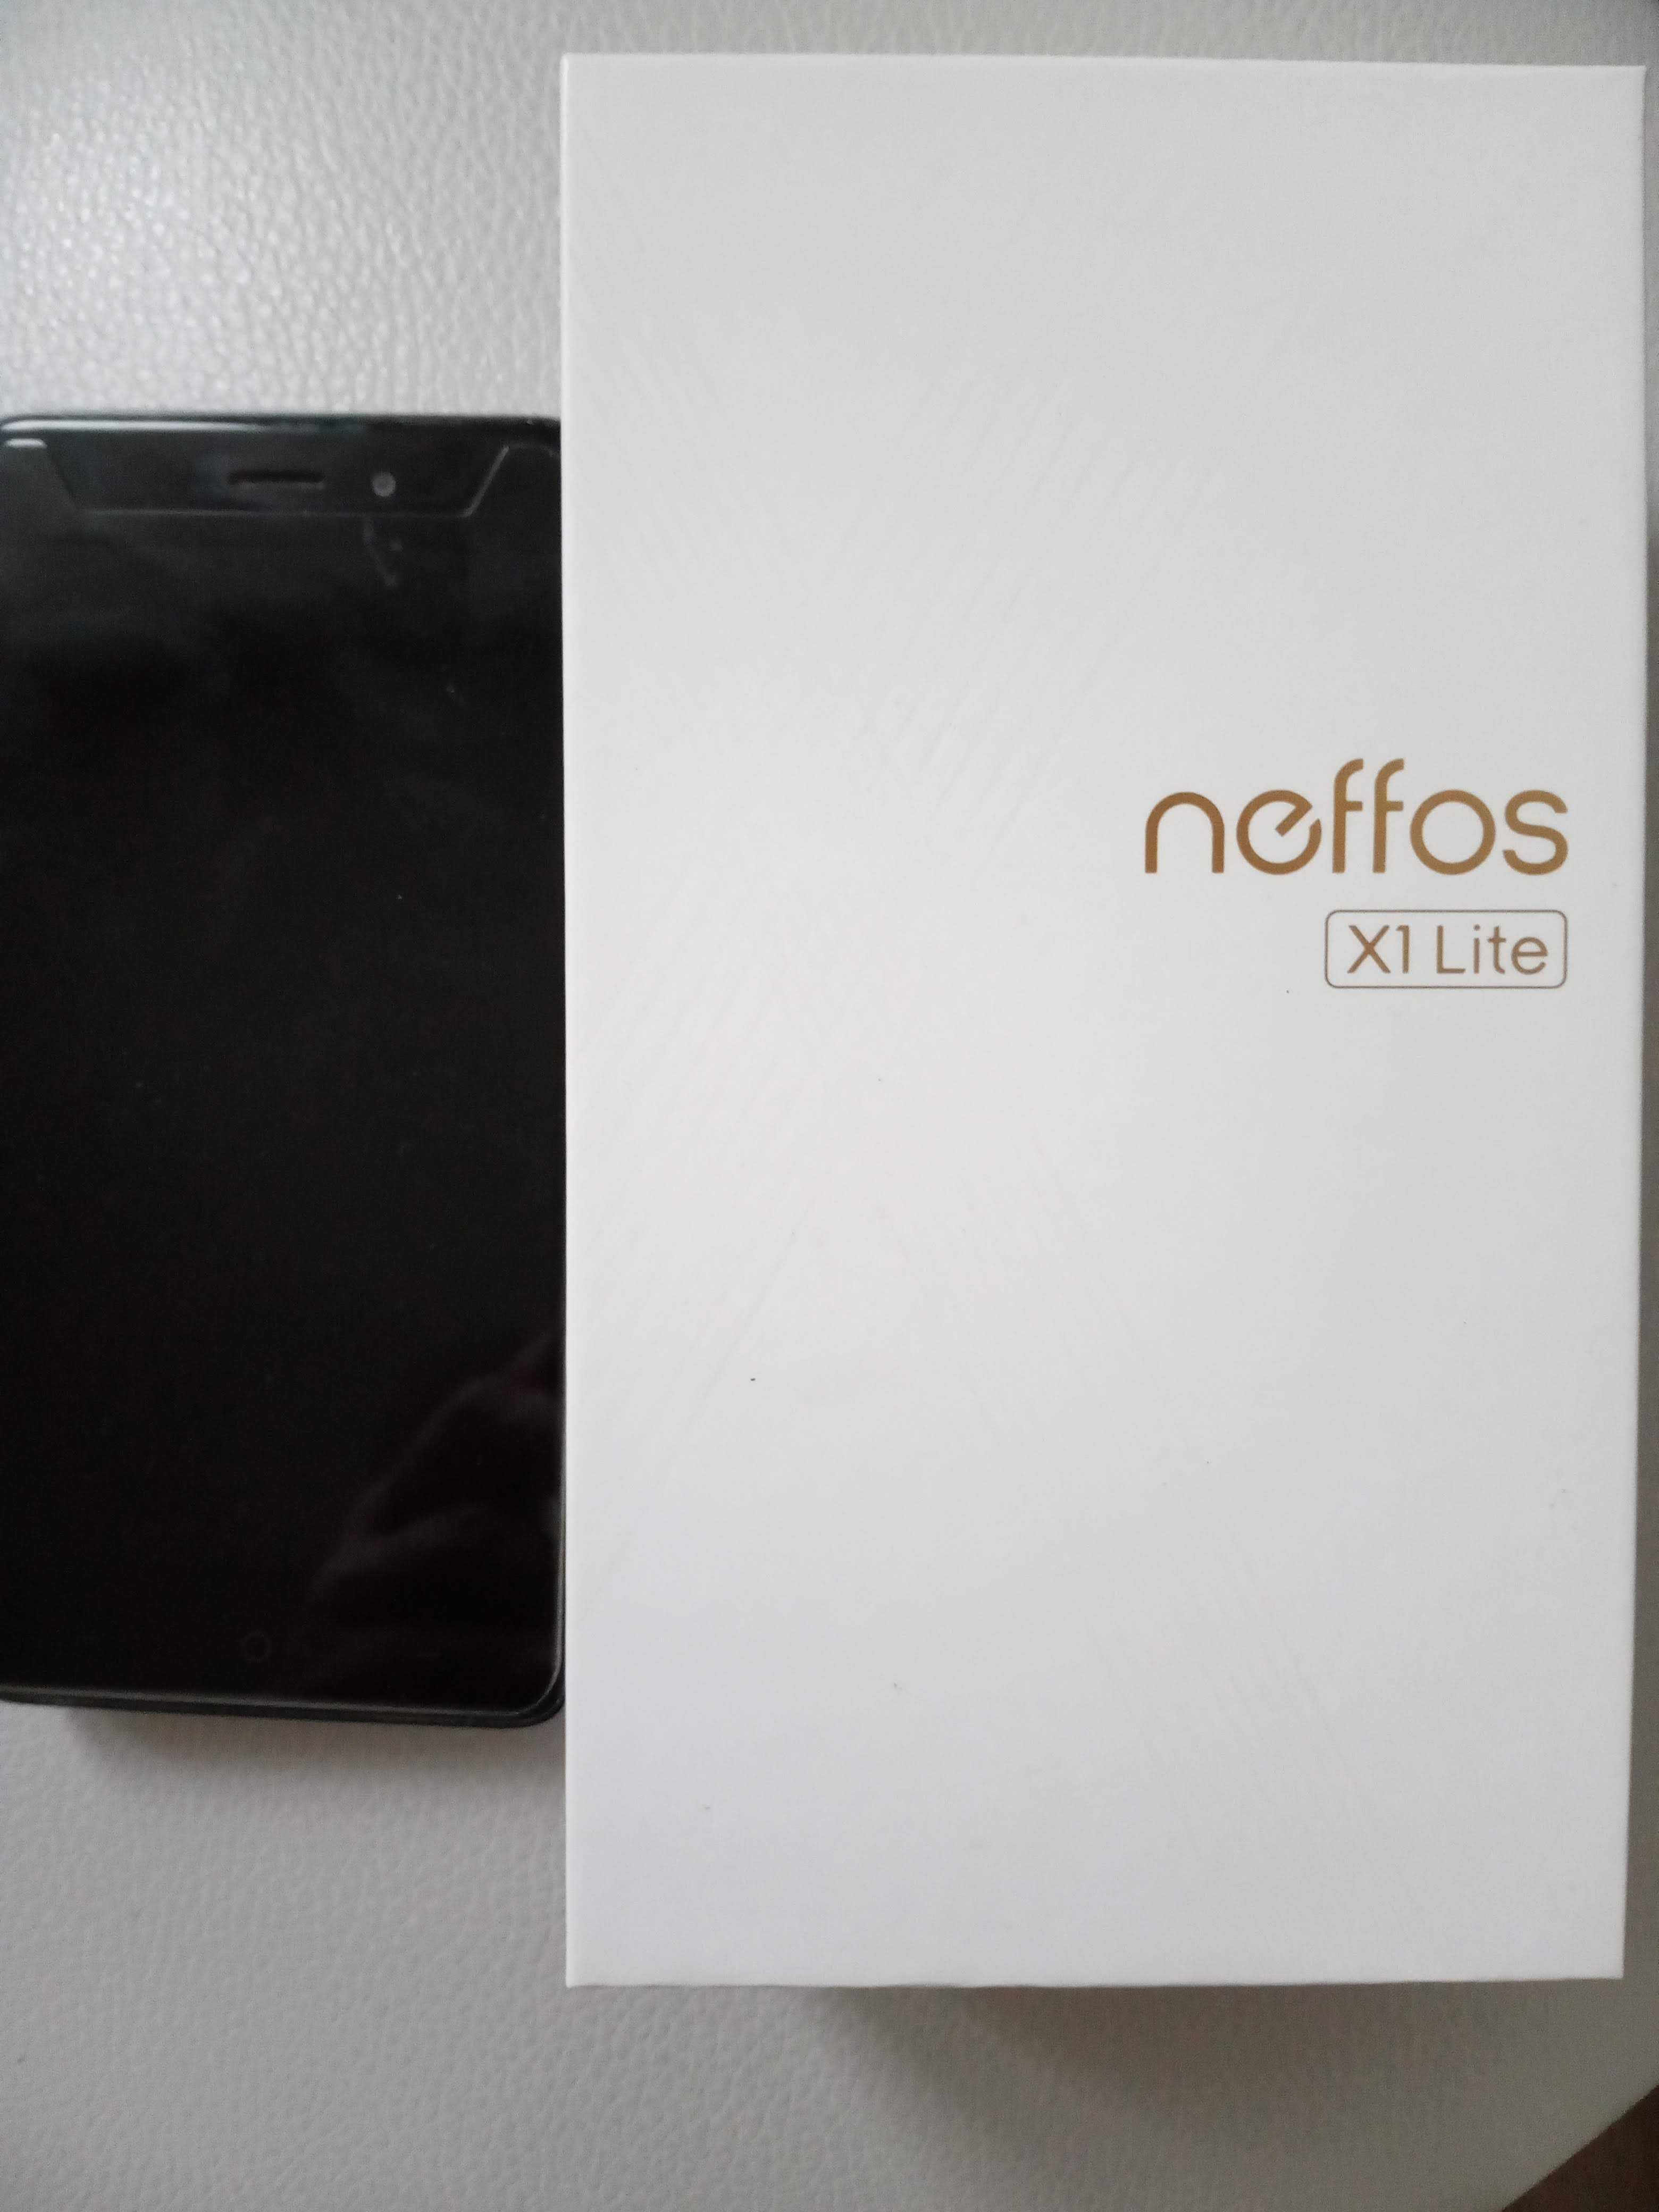 Neffos X 1 Lite, 2/16. Идеальное состояние, но требует замены батареи.